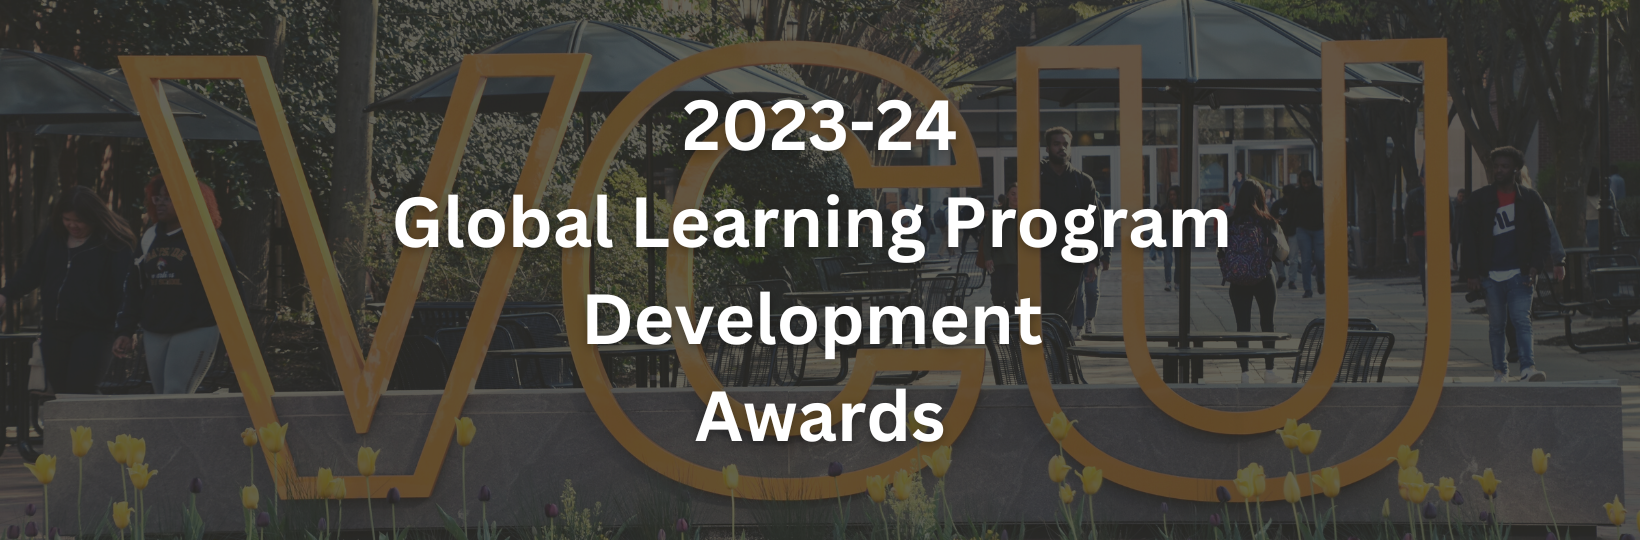 Global Learning Program Development Awards